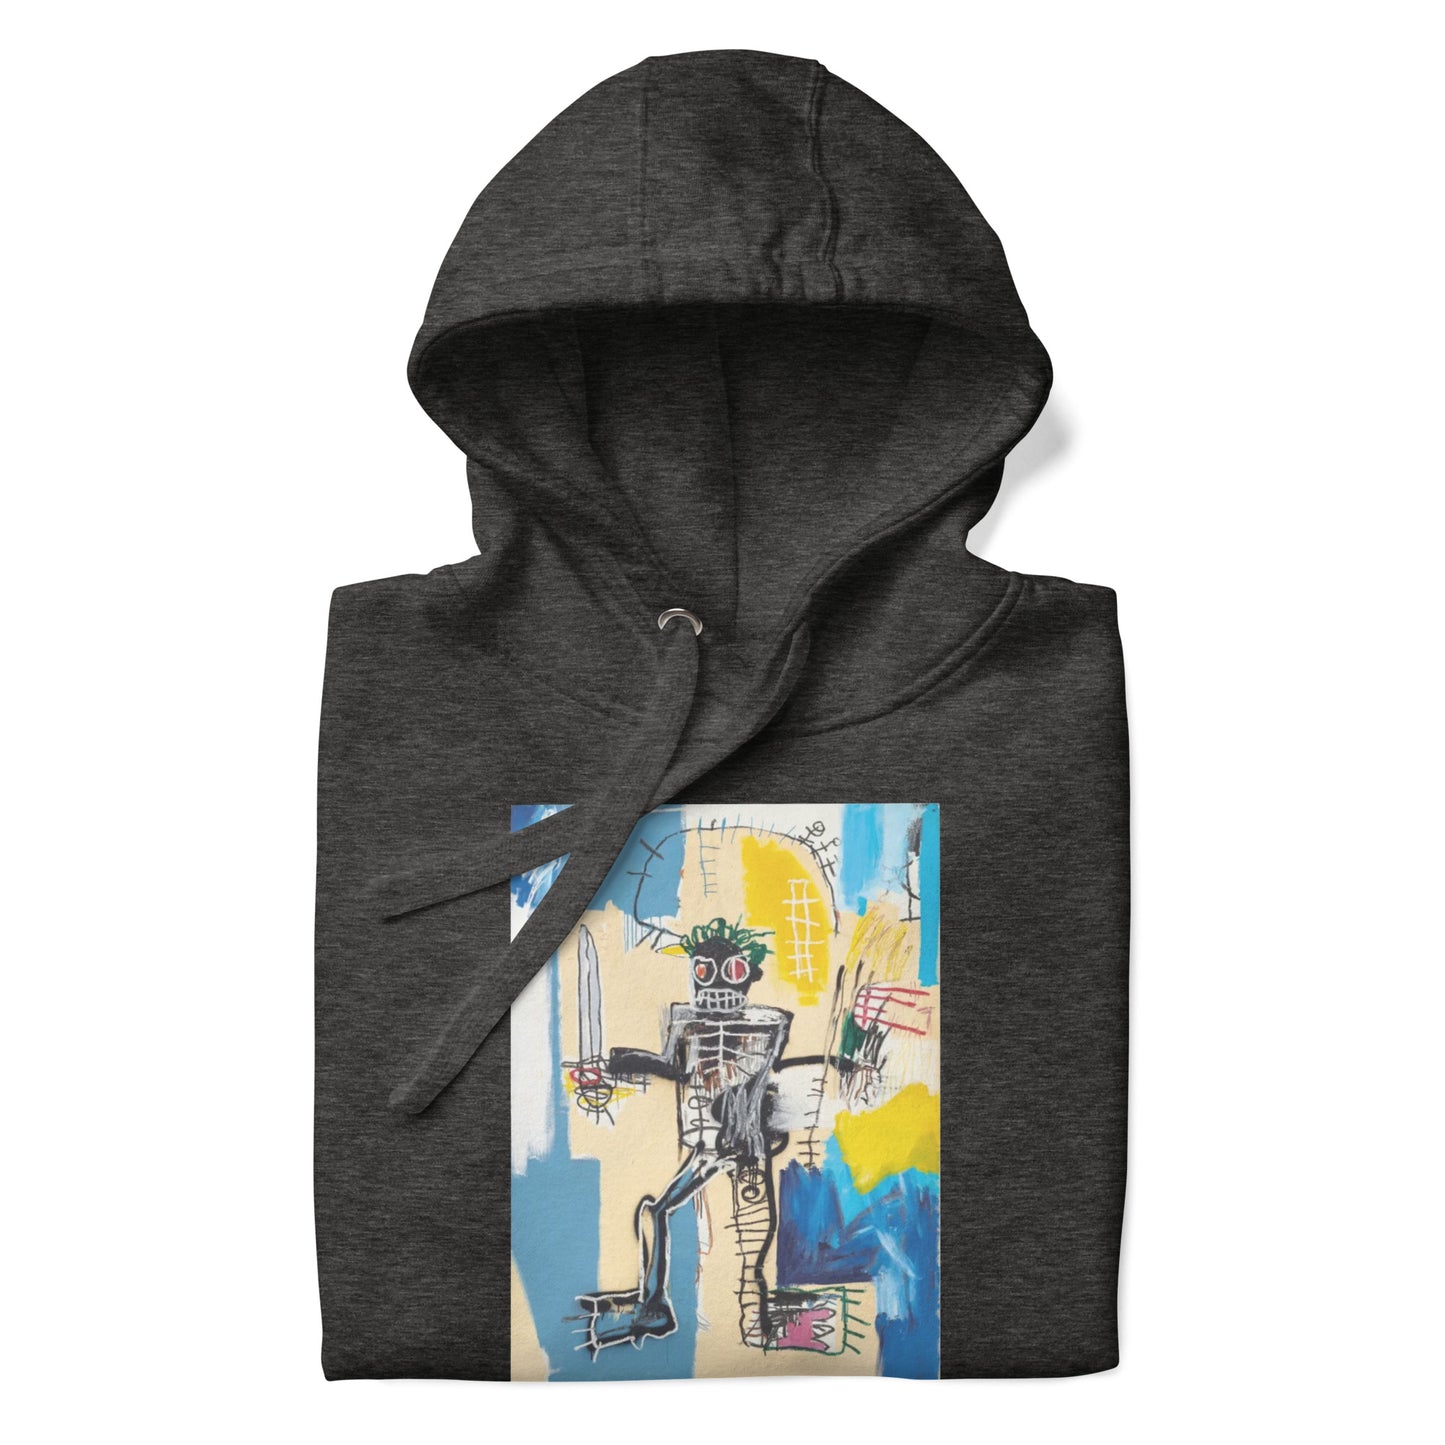 Jean-Michel Basquiat "Warrior" Artwork Printed Premium Streetwear Sweatshirt Hoodie Charcoal Grey